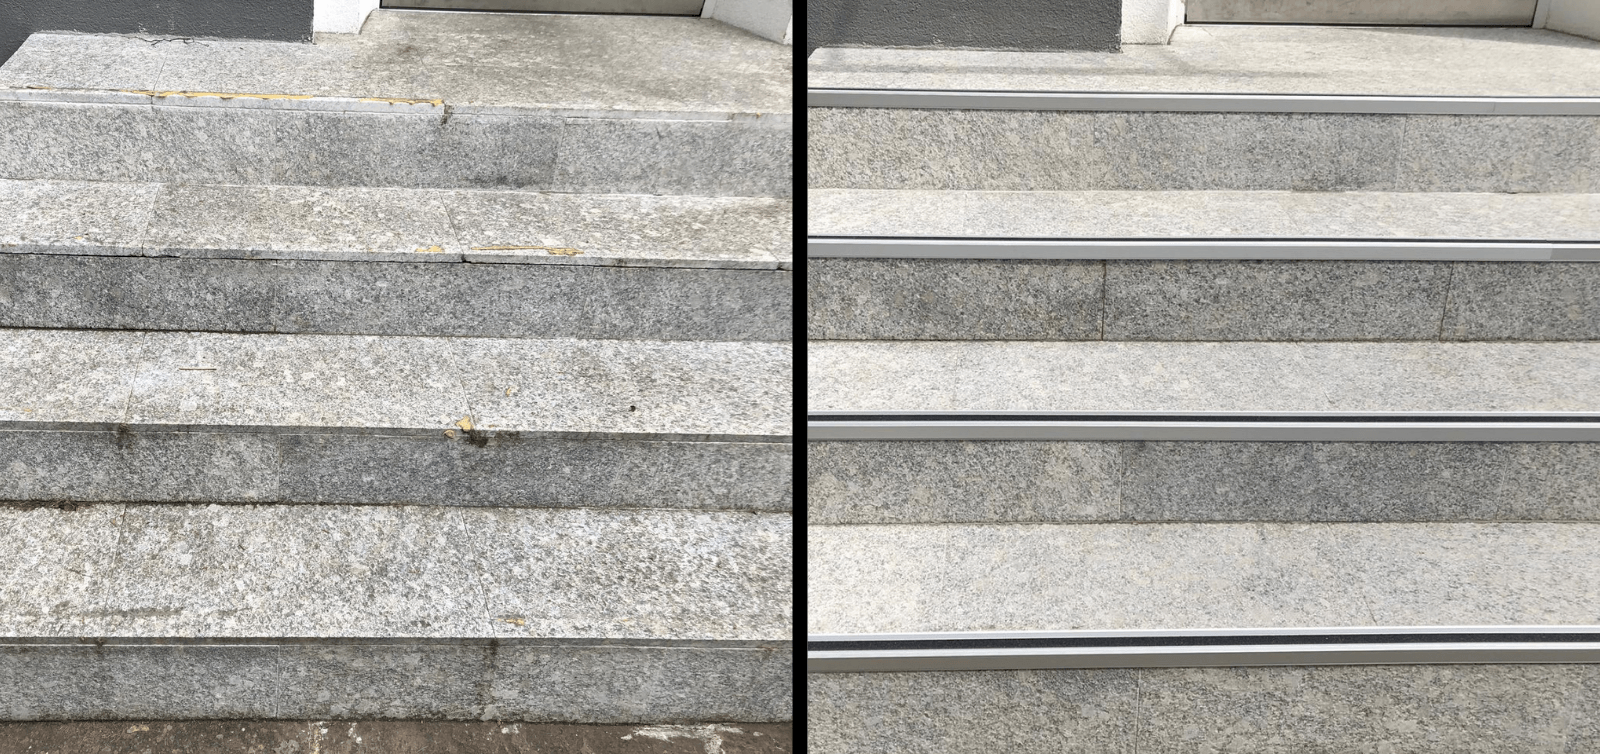 Reinigung Naturstein Treppe außen NRW Mandreko Steinrenovierung